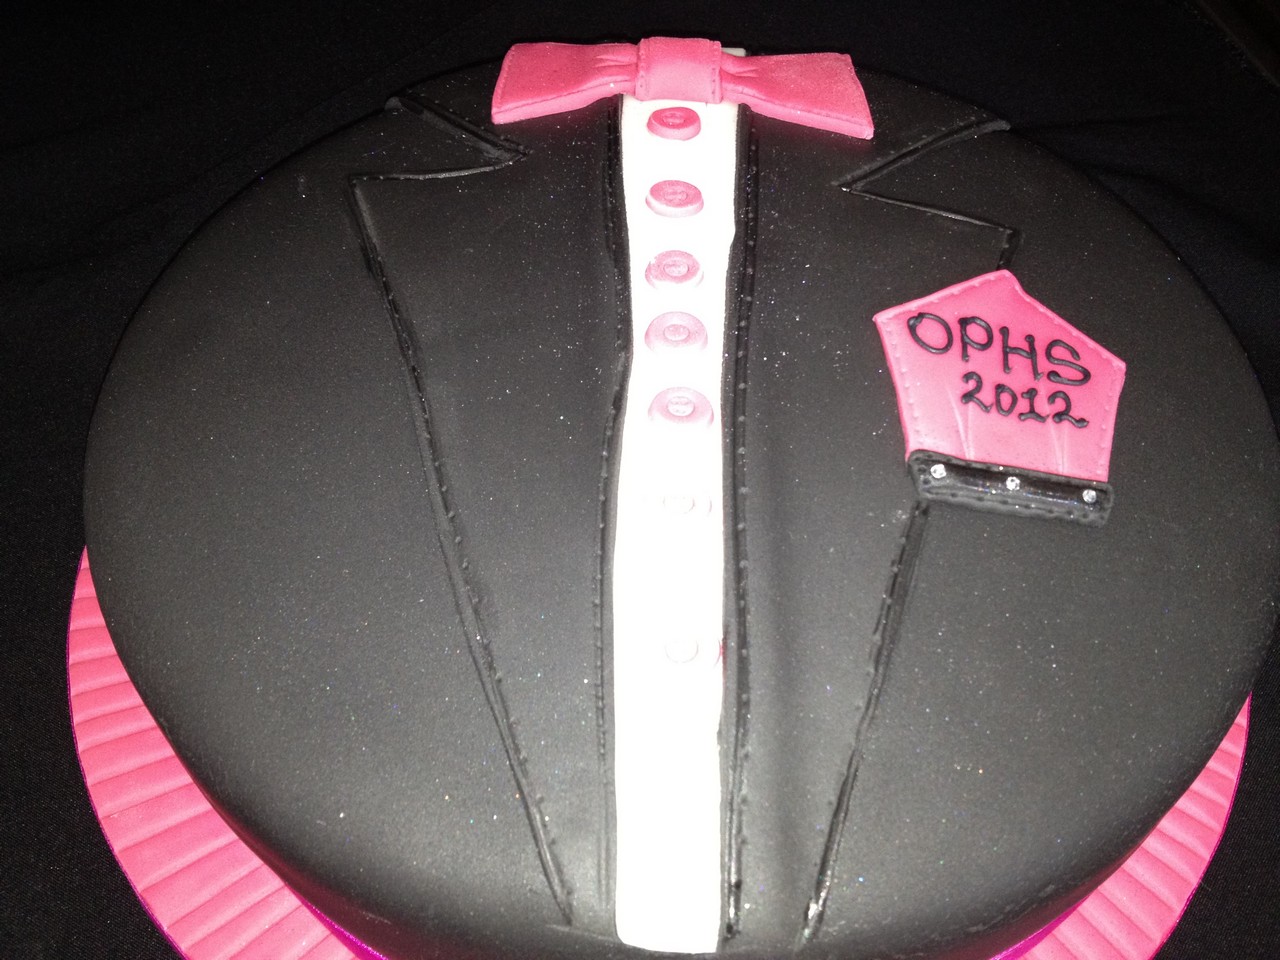 Prom Cake Cake | Celebration Cakes